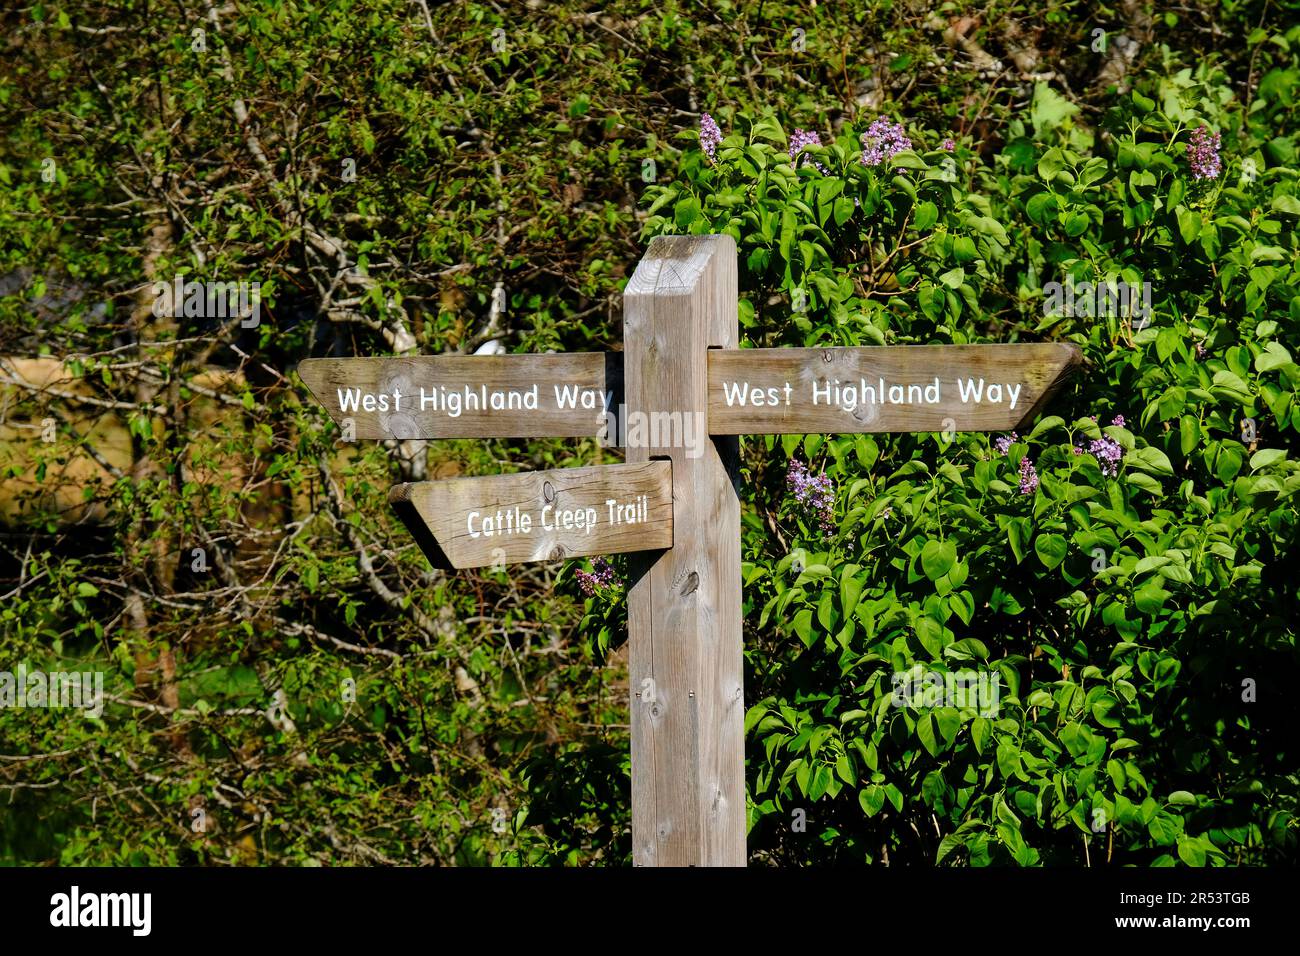 Panneau Fingerpost pour le Cattle Creep Trail et la West Highland Way, Tyndrum, Écosse Banque D'Images